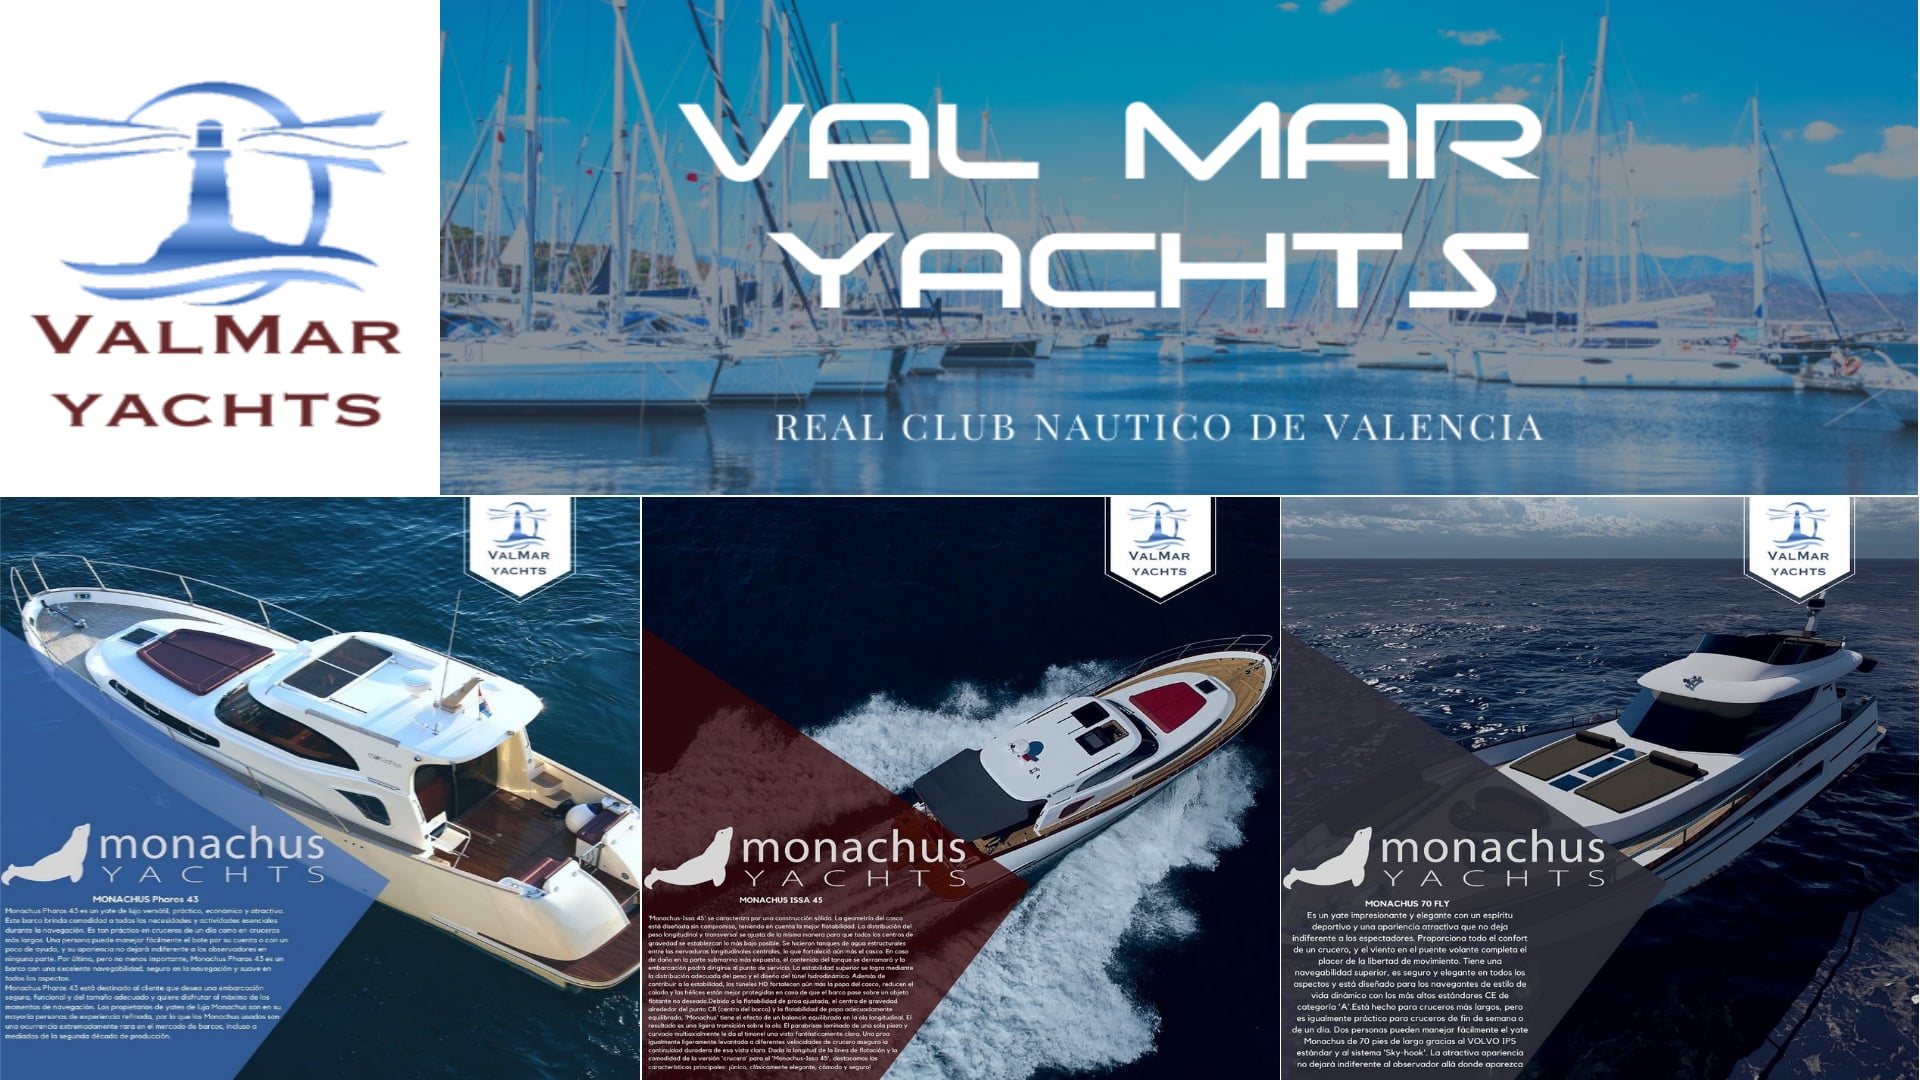 Neuer autorisierter Vertreter von Monachus Yachts für Spanien